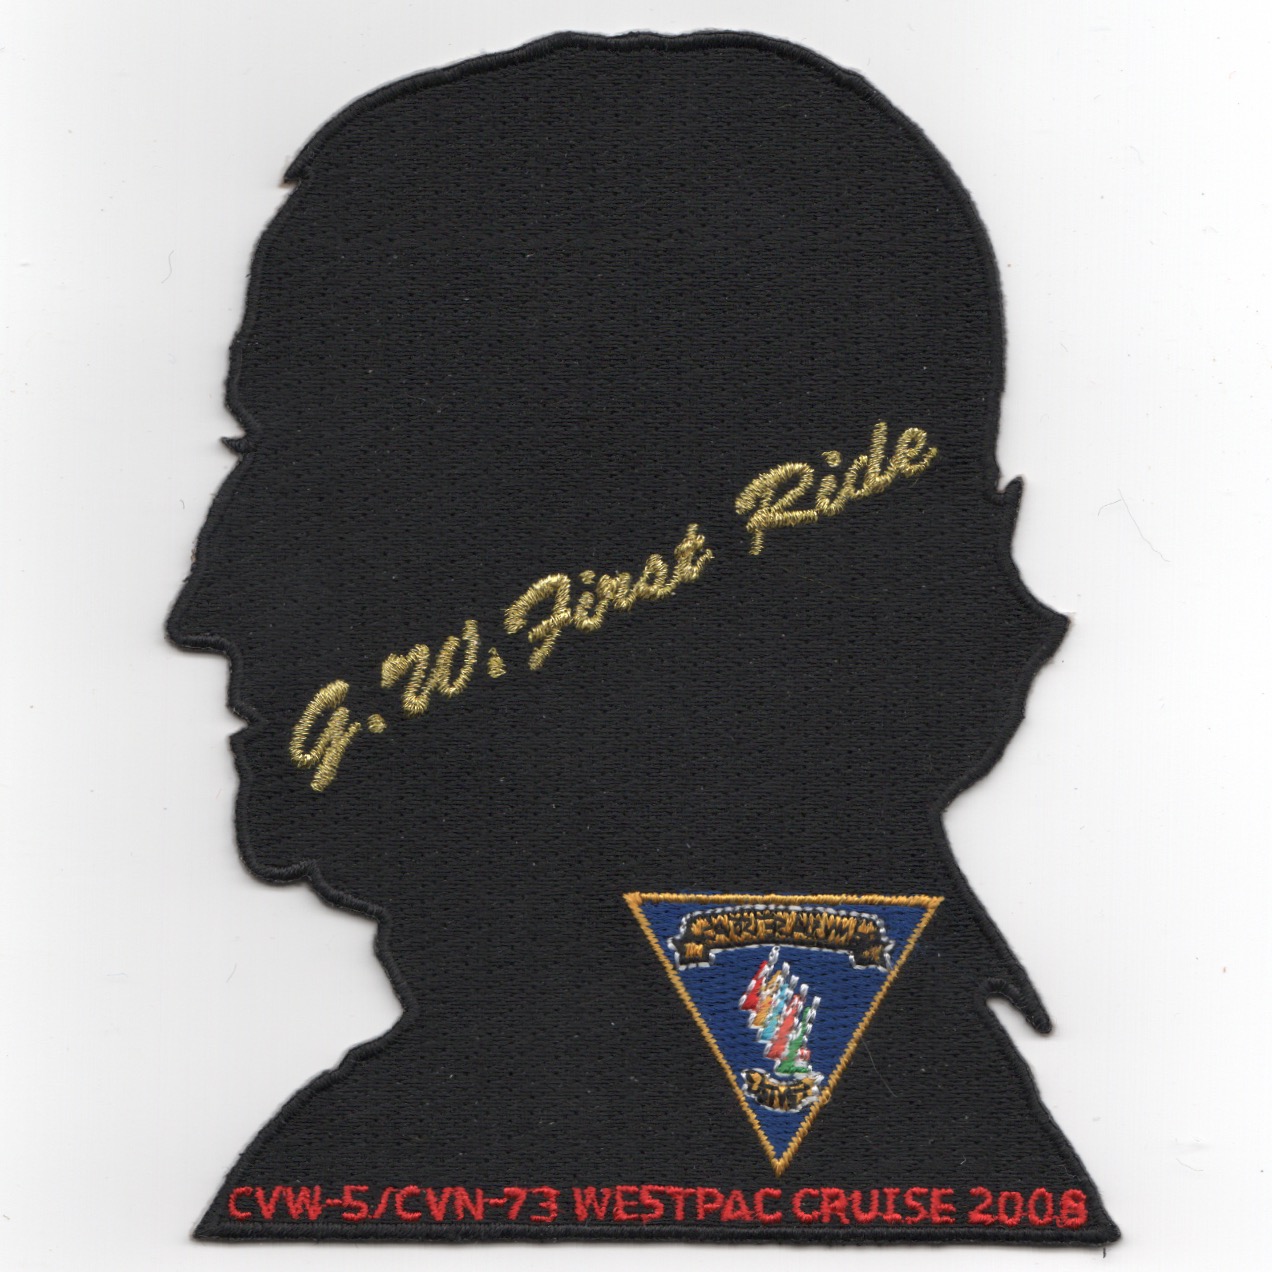 CVN-73/CVW-5 'FIRST RIDE' WestPac Cruise (Black Head)